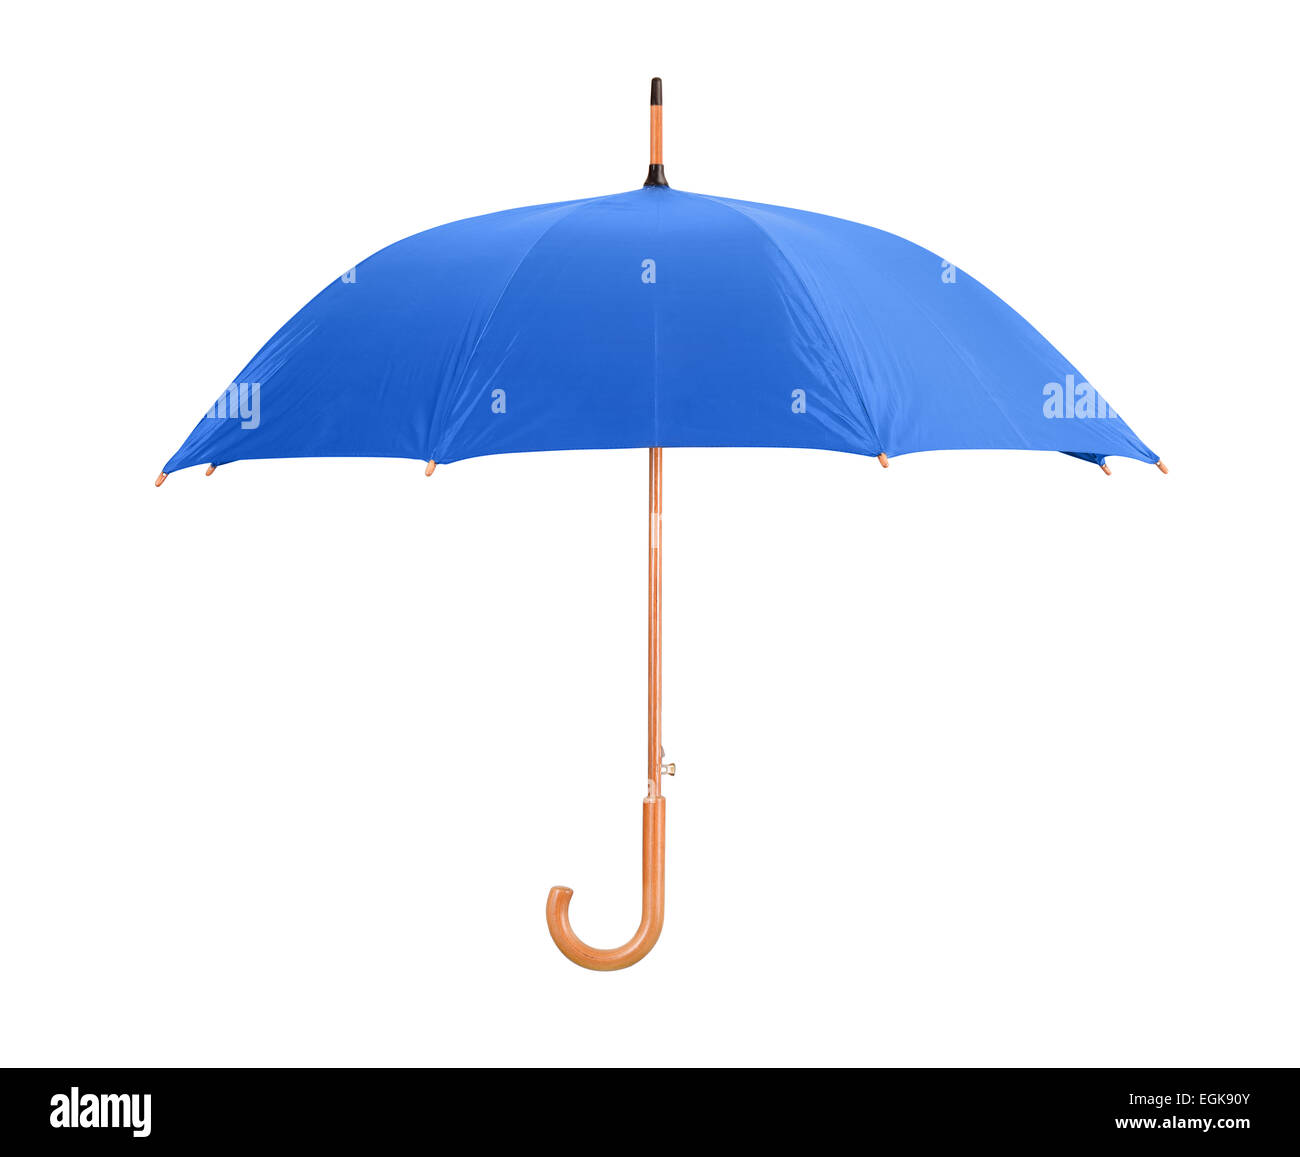 Parapluie bleu classique isolated on white Banque D'Images